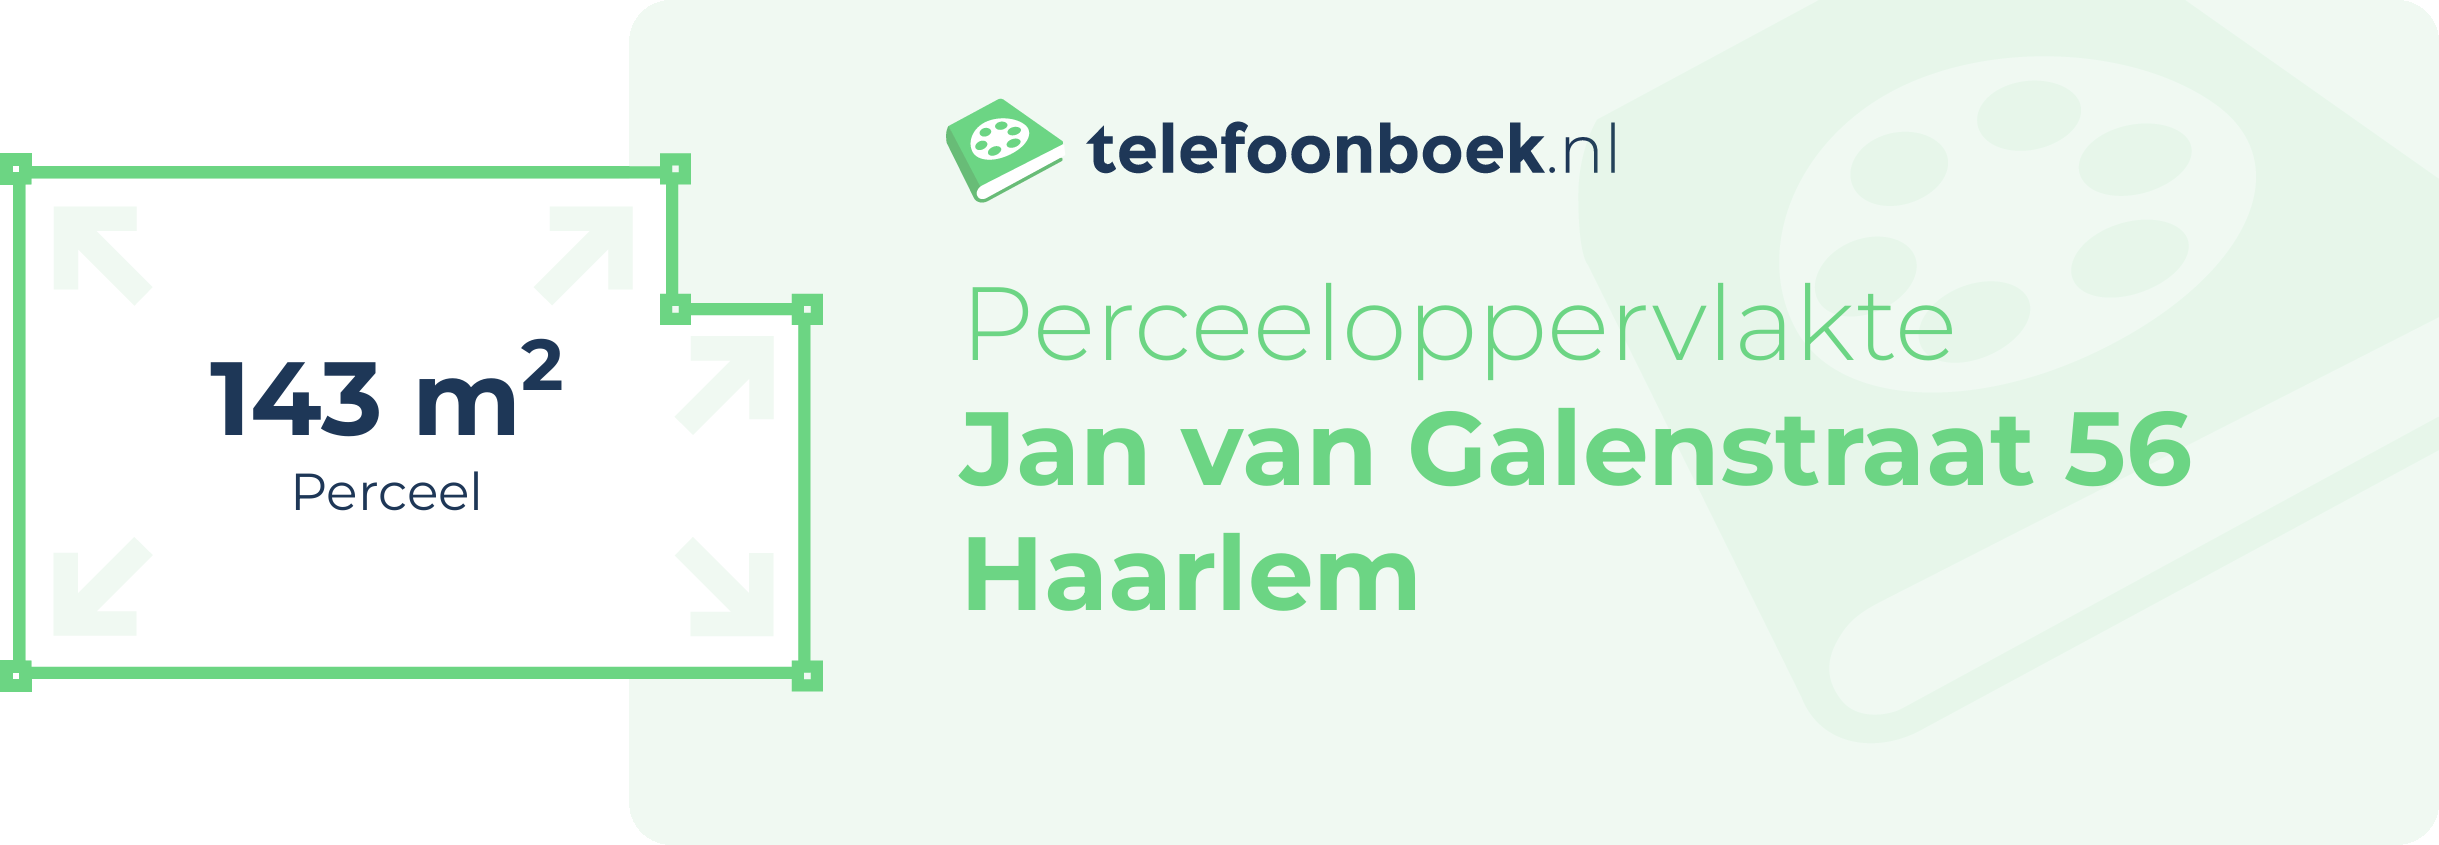 Perceeloppervlakte Jan Van Galenstraat 56 Haarlem